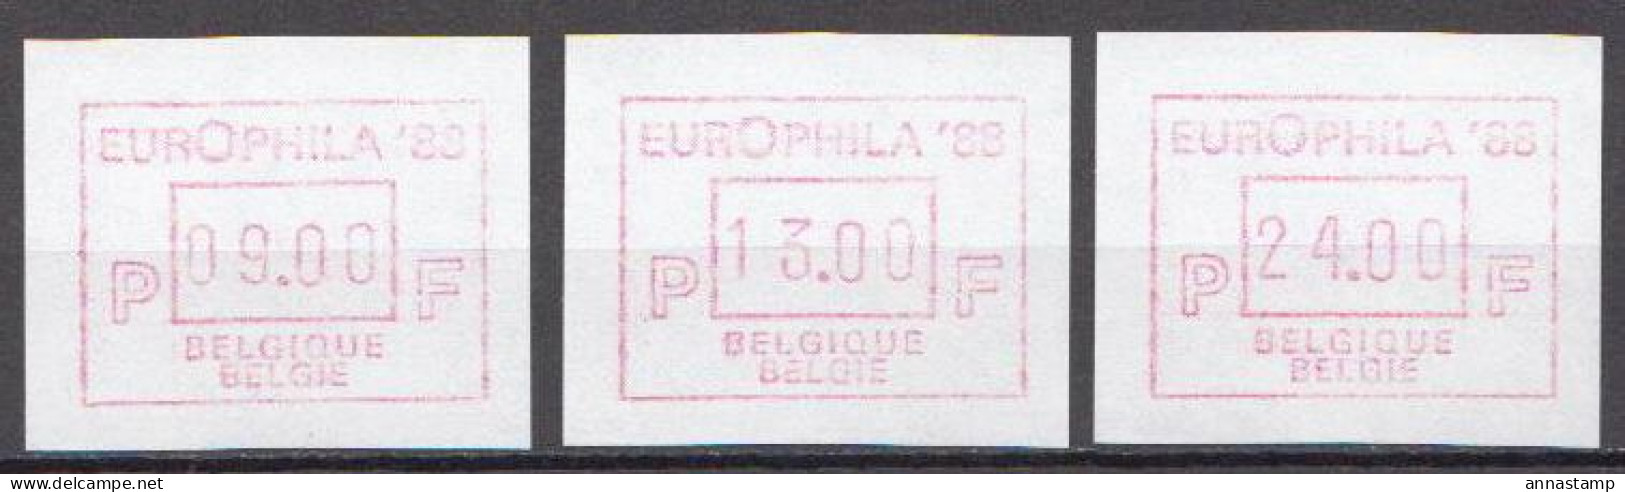 Belgium MNH Stamps - 1980-99